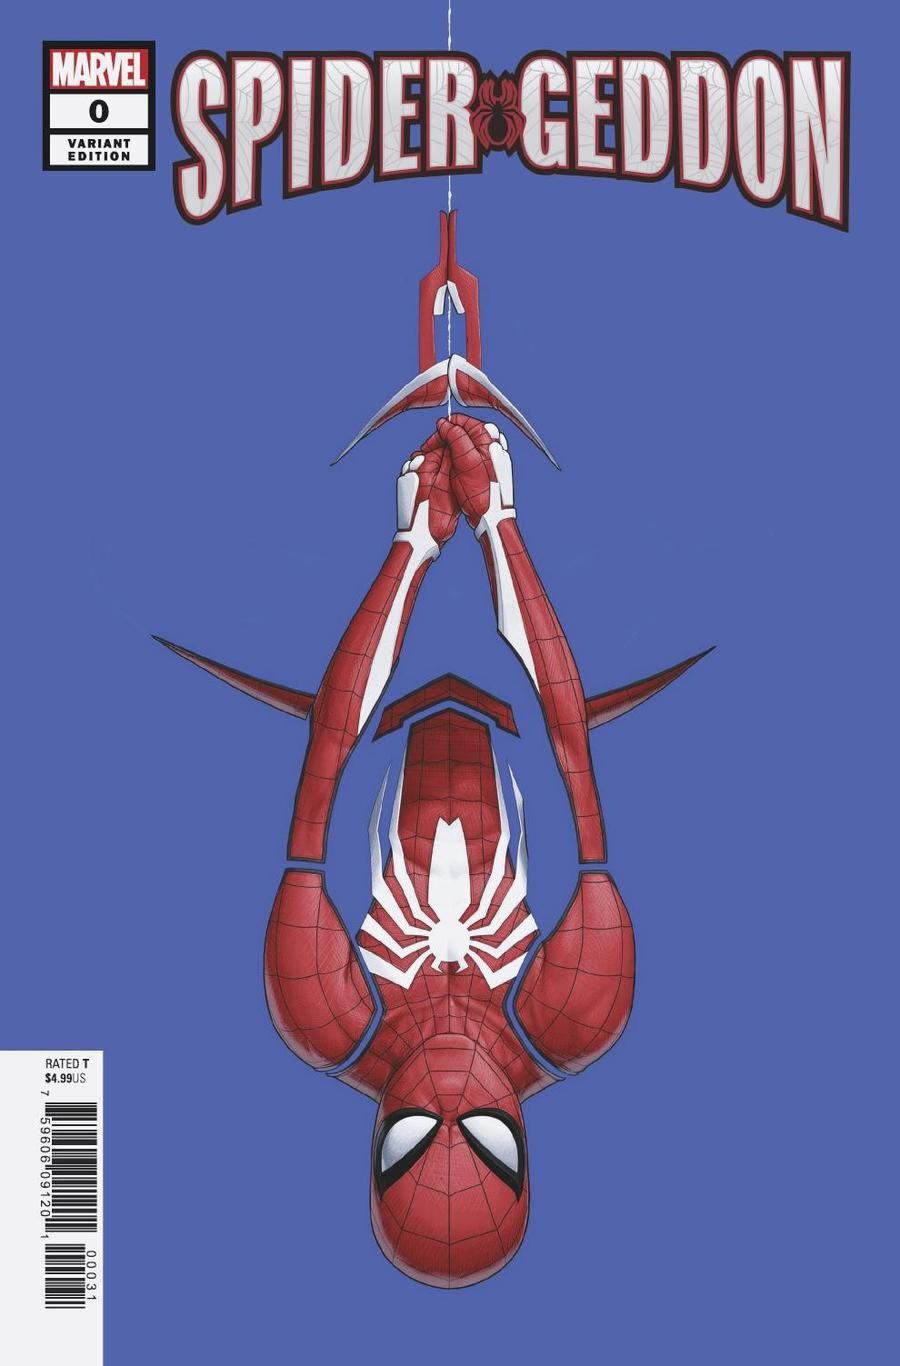 eyJidWNrZXQiOiJnb2NvbGxlY3QuaW1hZ2VzLnB1YiIsImtleSI6IjQ3OWQ1ZTVjLWQ0N2YtNGI2ZS1iNGU3LTQ3YTc4N2Q3OGE4Mi5qcGciLCJlZGl0cyI6W119 Weekly MCU Spec: Spider-Verse